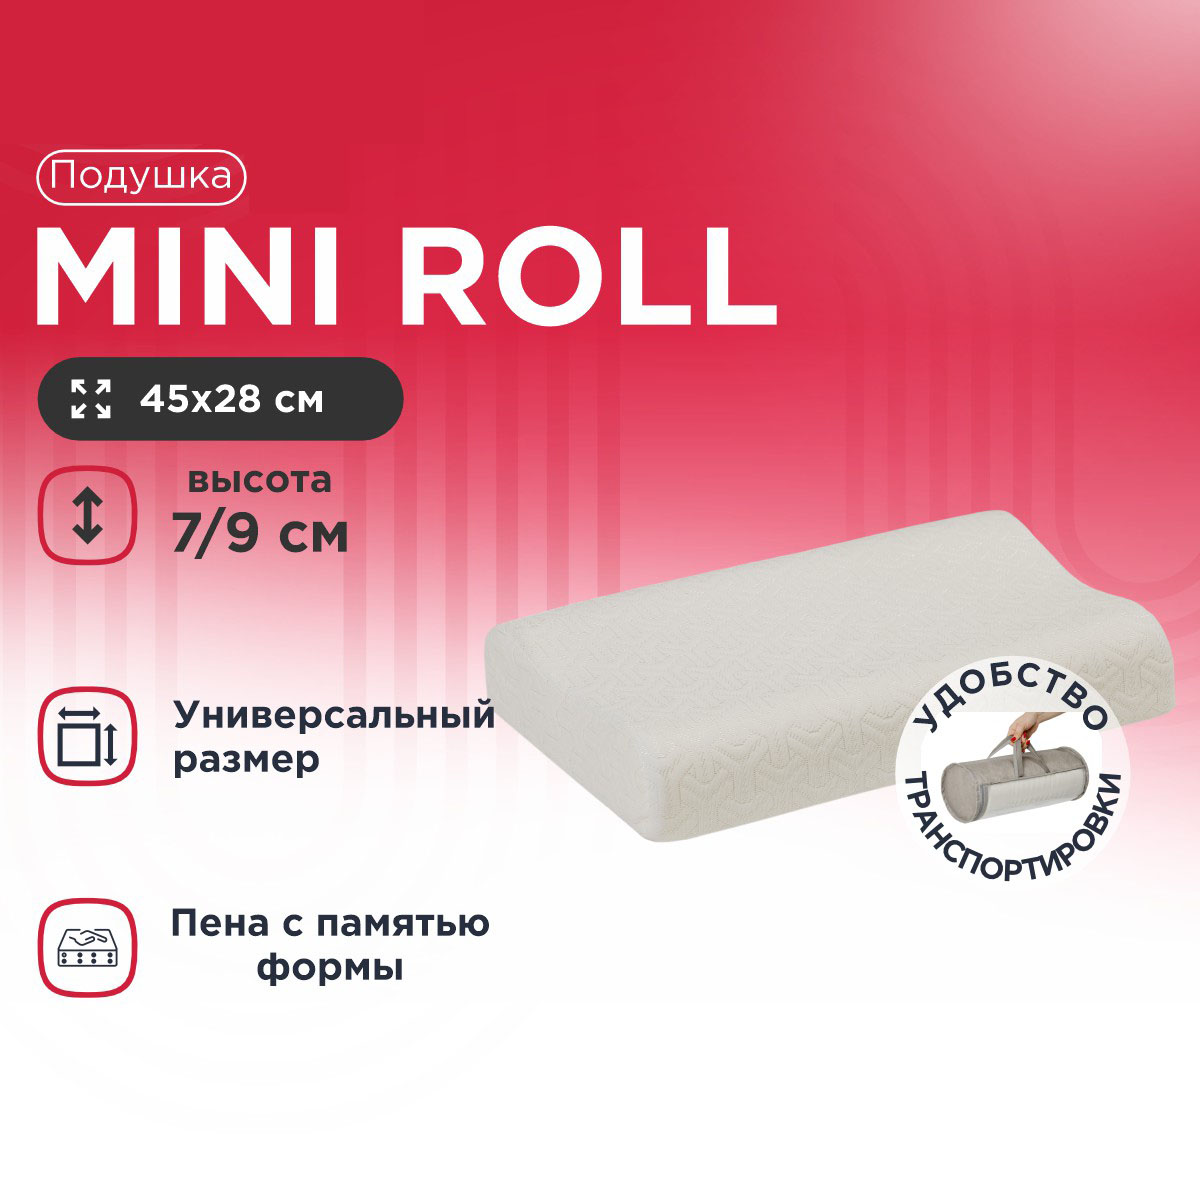 Подушка Mini Roll 28х45 см